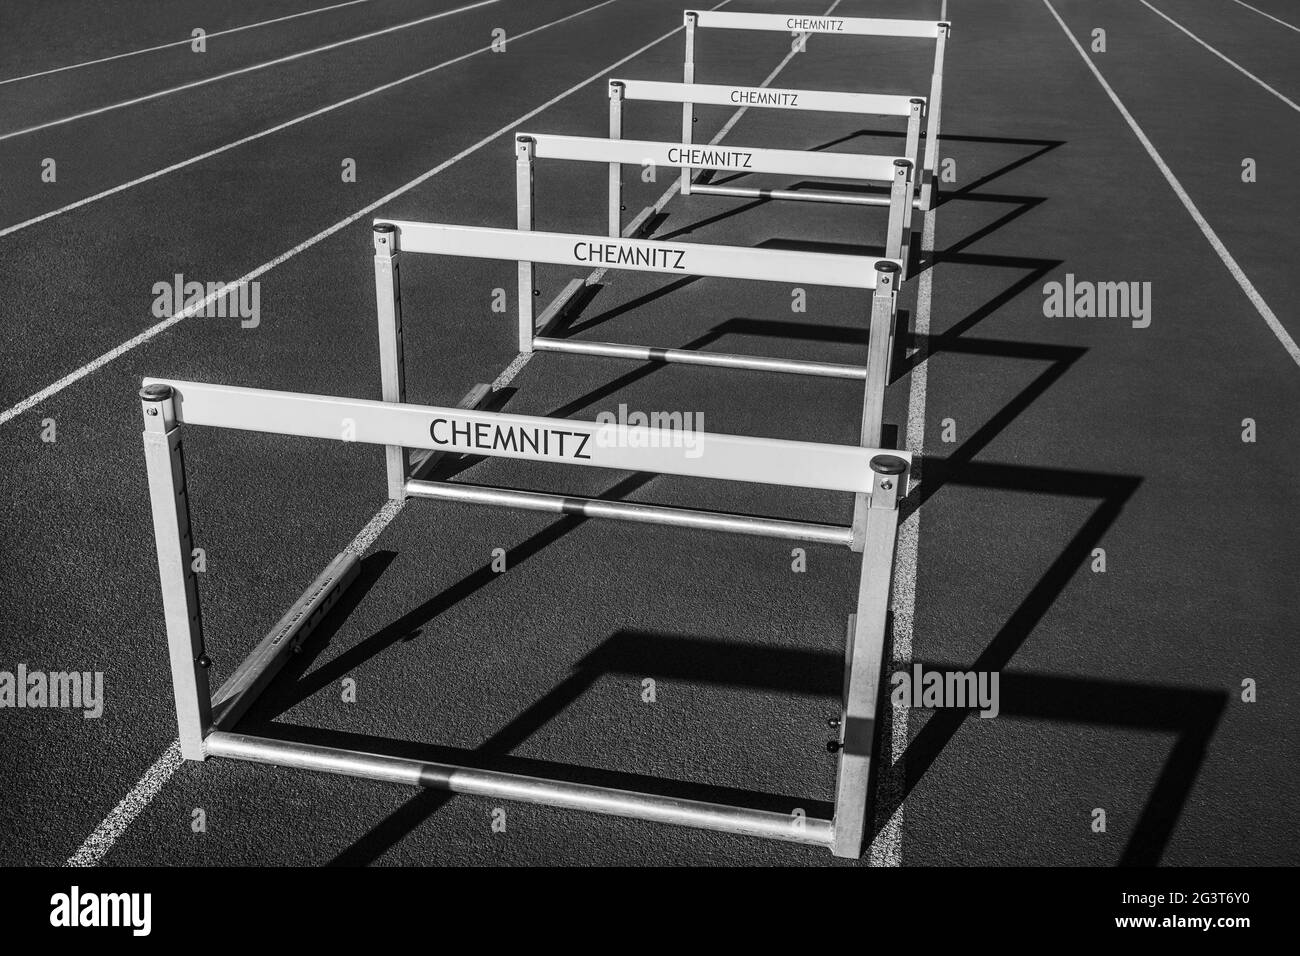 Instalaciones deportivas en Chemnitz - obstáculos en la pista Foto de stock